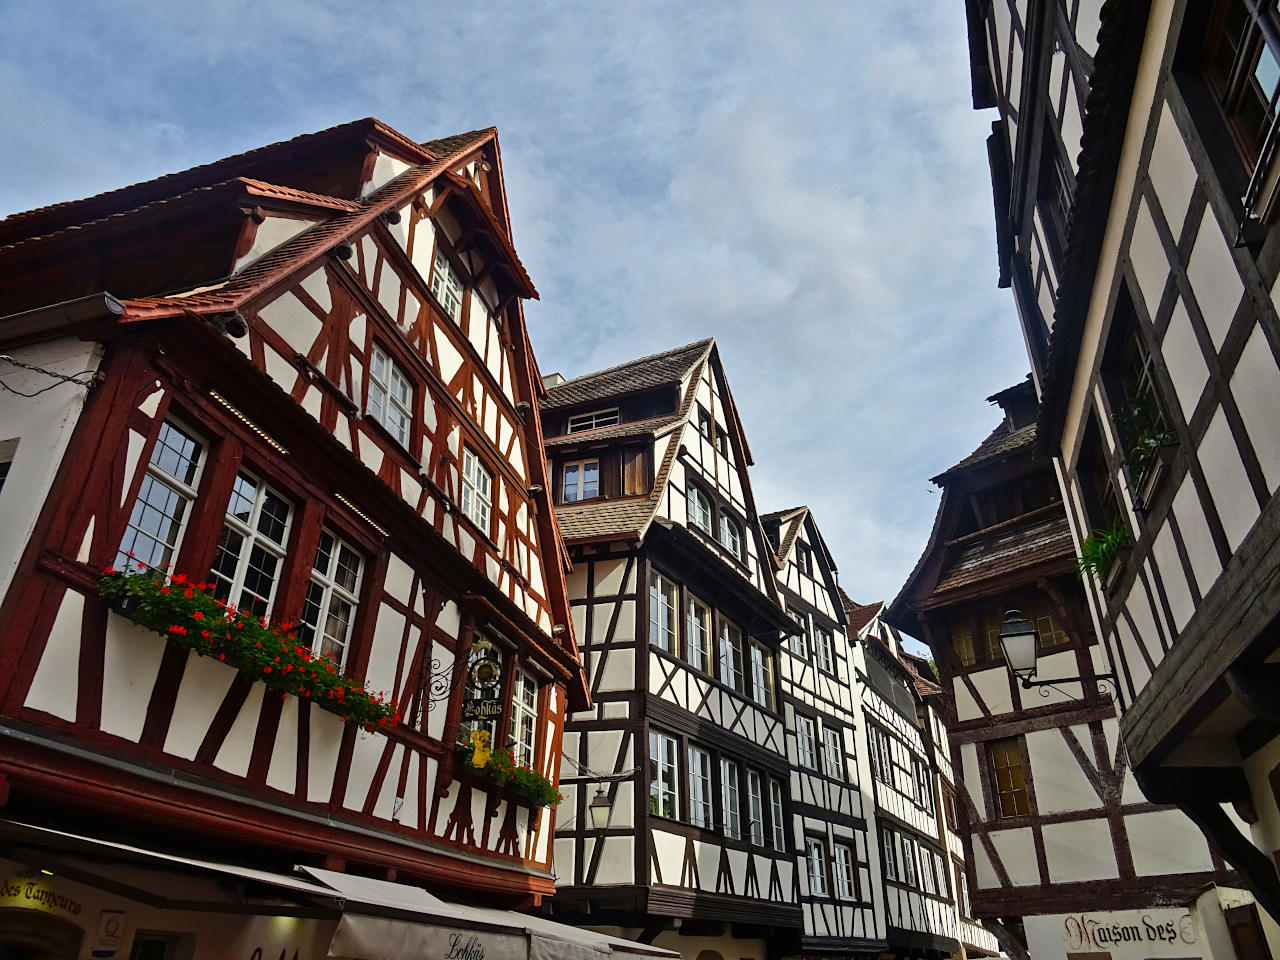 rue typique de la Petite France de Strasbourg avec ses maisons à colombages